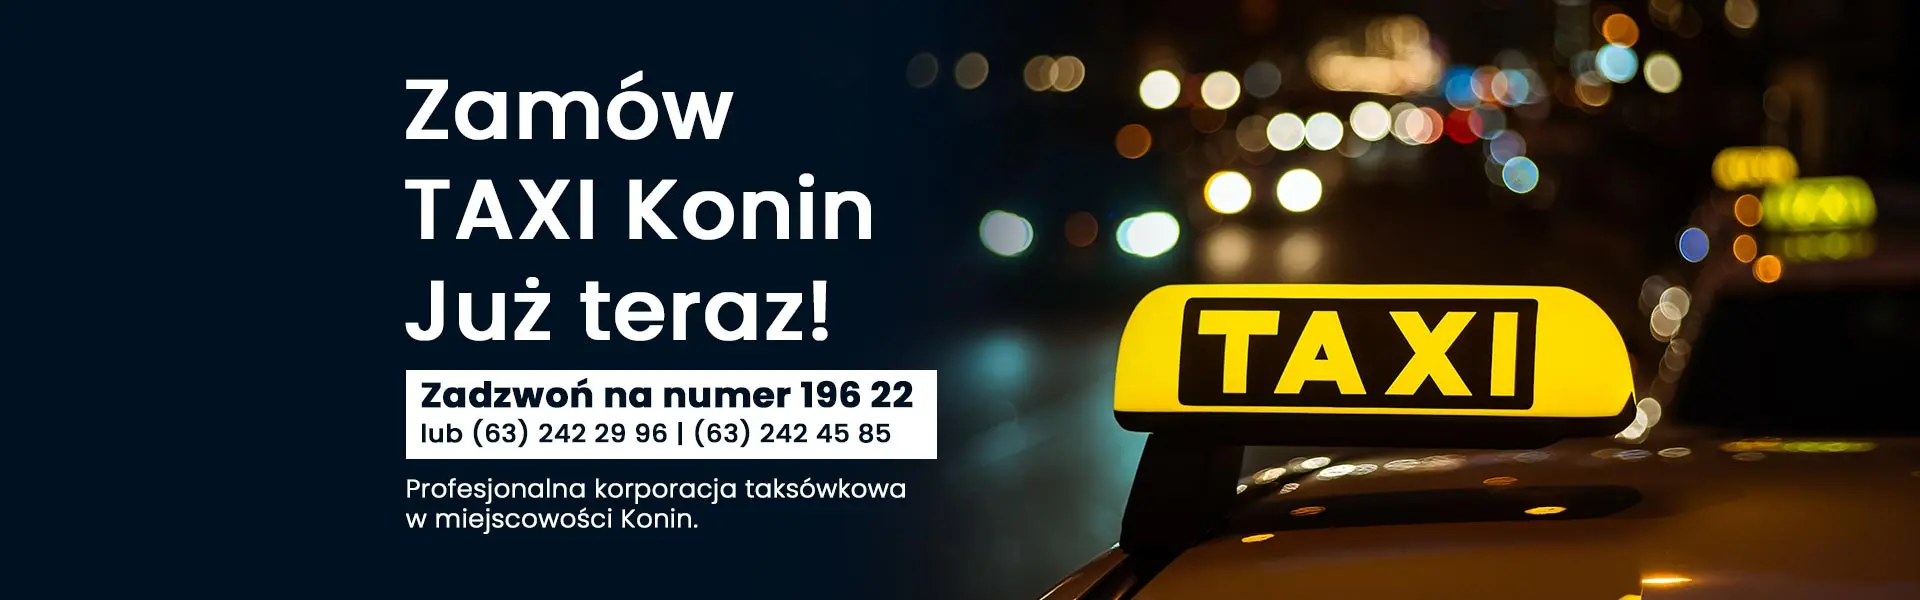 radio taxi konin 196 22 zrzeszenie transportu prywatnego konin - Jak zamówić taxi w Koninie